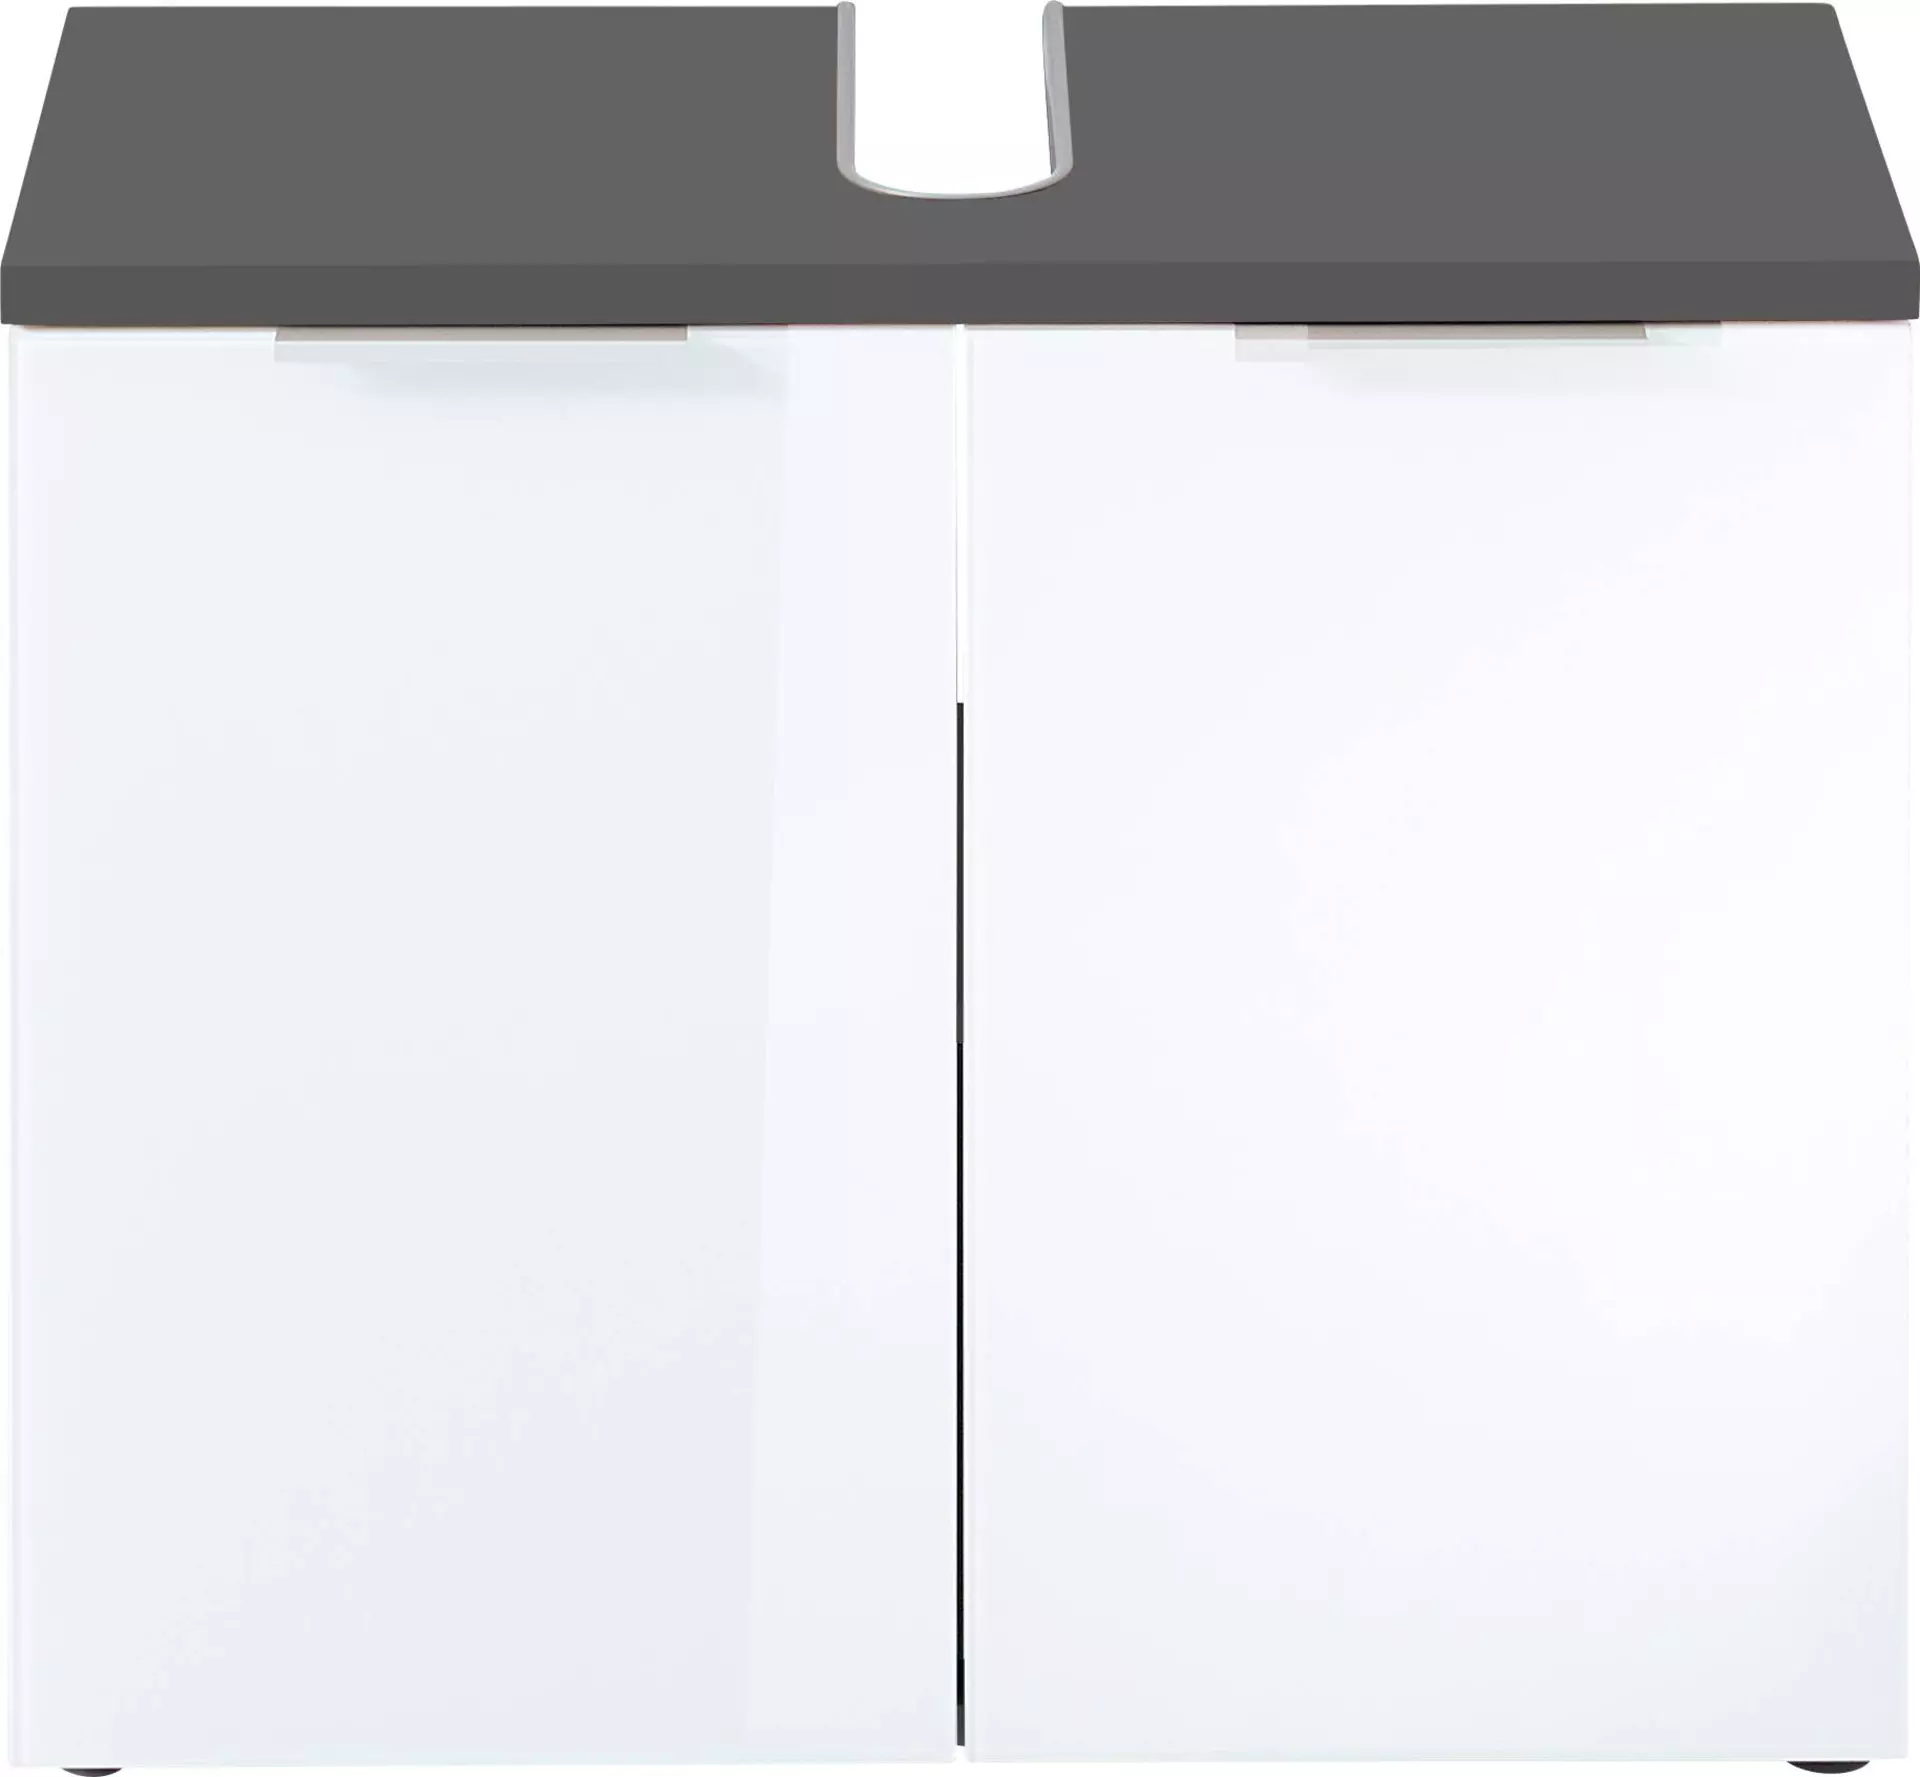 Waschbeckenunterschrank ca. 70 x 58 x 34 cm weiß | Möbel Inhofer